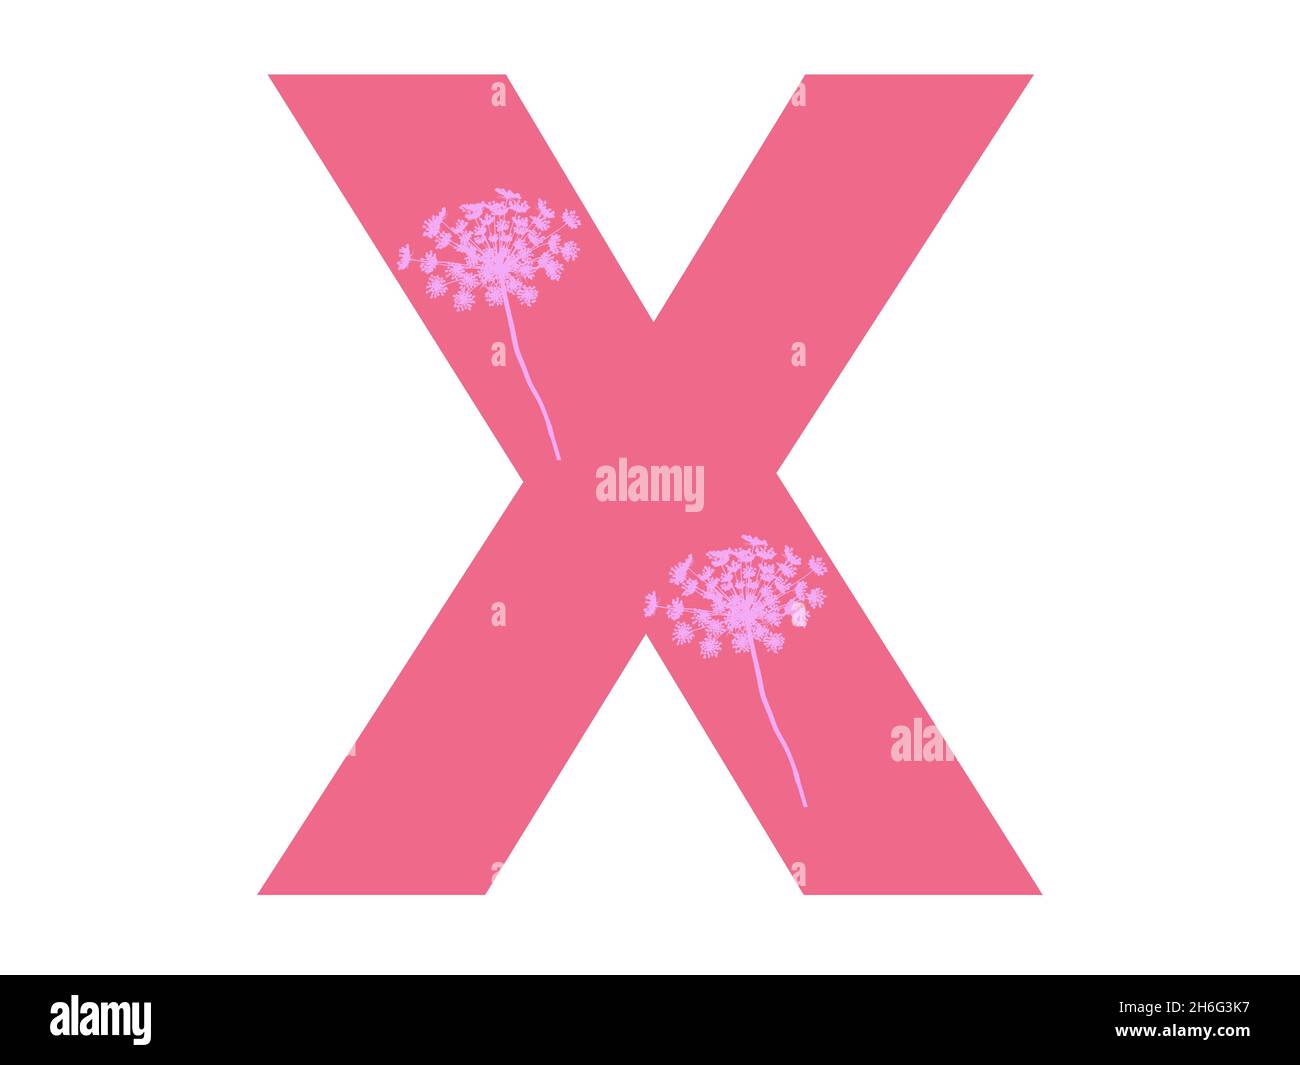 Lettera X dell'alfabeto realizzata con una silhouette di fiori rosa su sfondo rosa scuro, la lettera è isolata su sfondo bianco Foto Stock